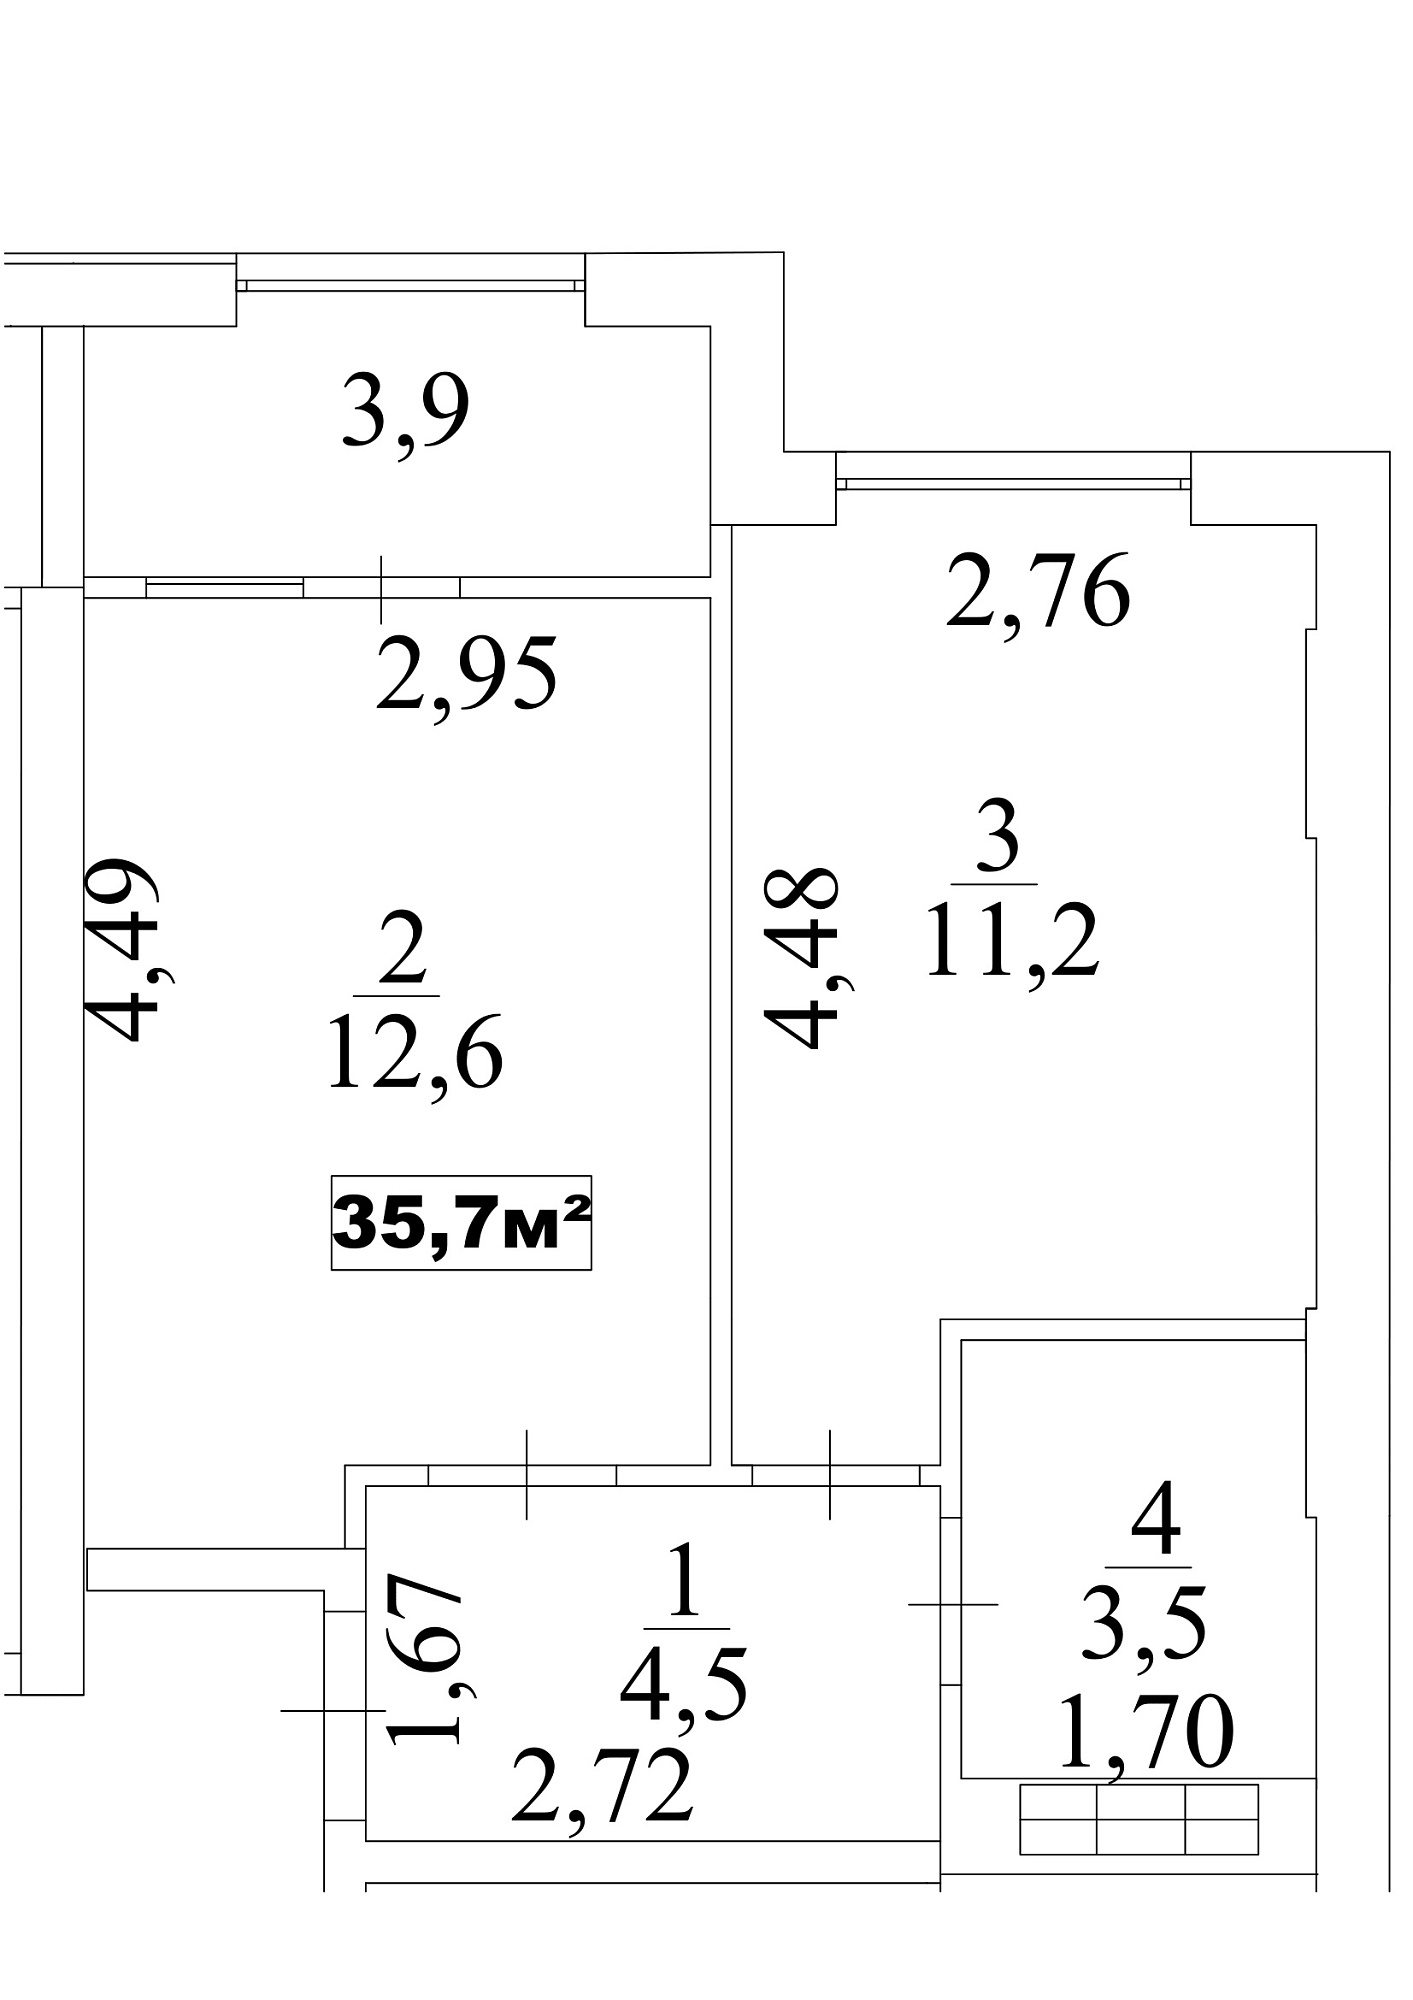 Планировка 1-к квартира площей 35.7м2, AB-10-10/0088б.